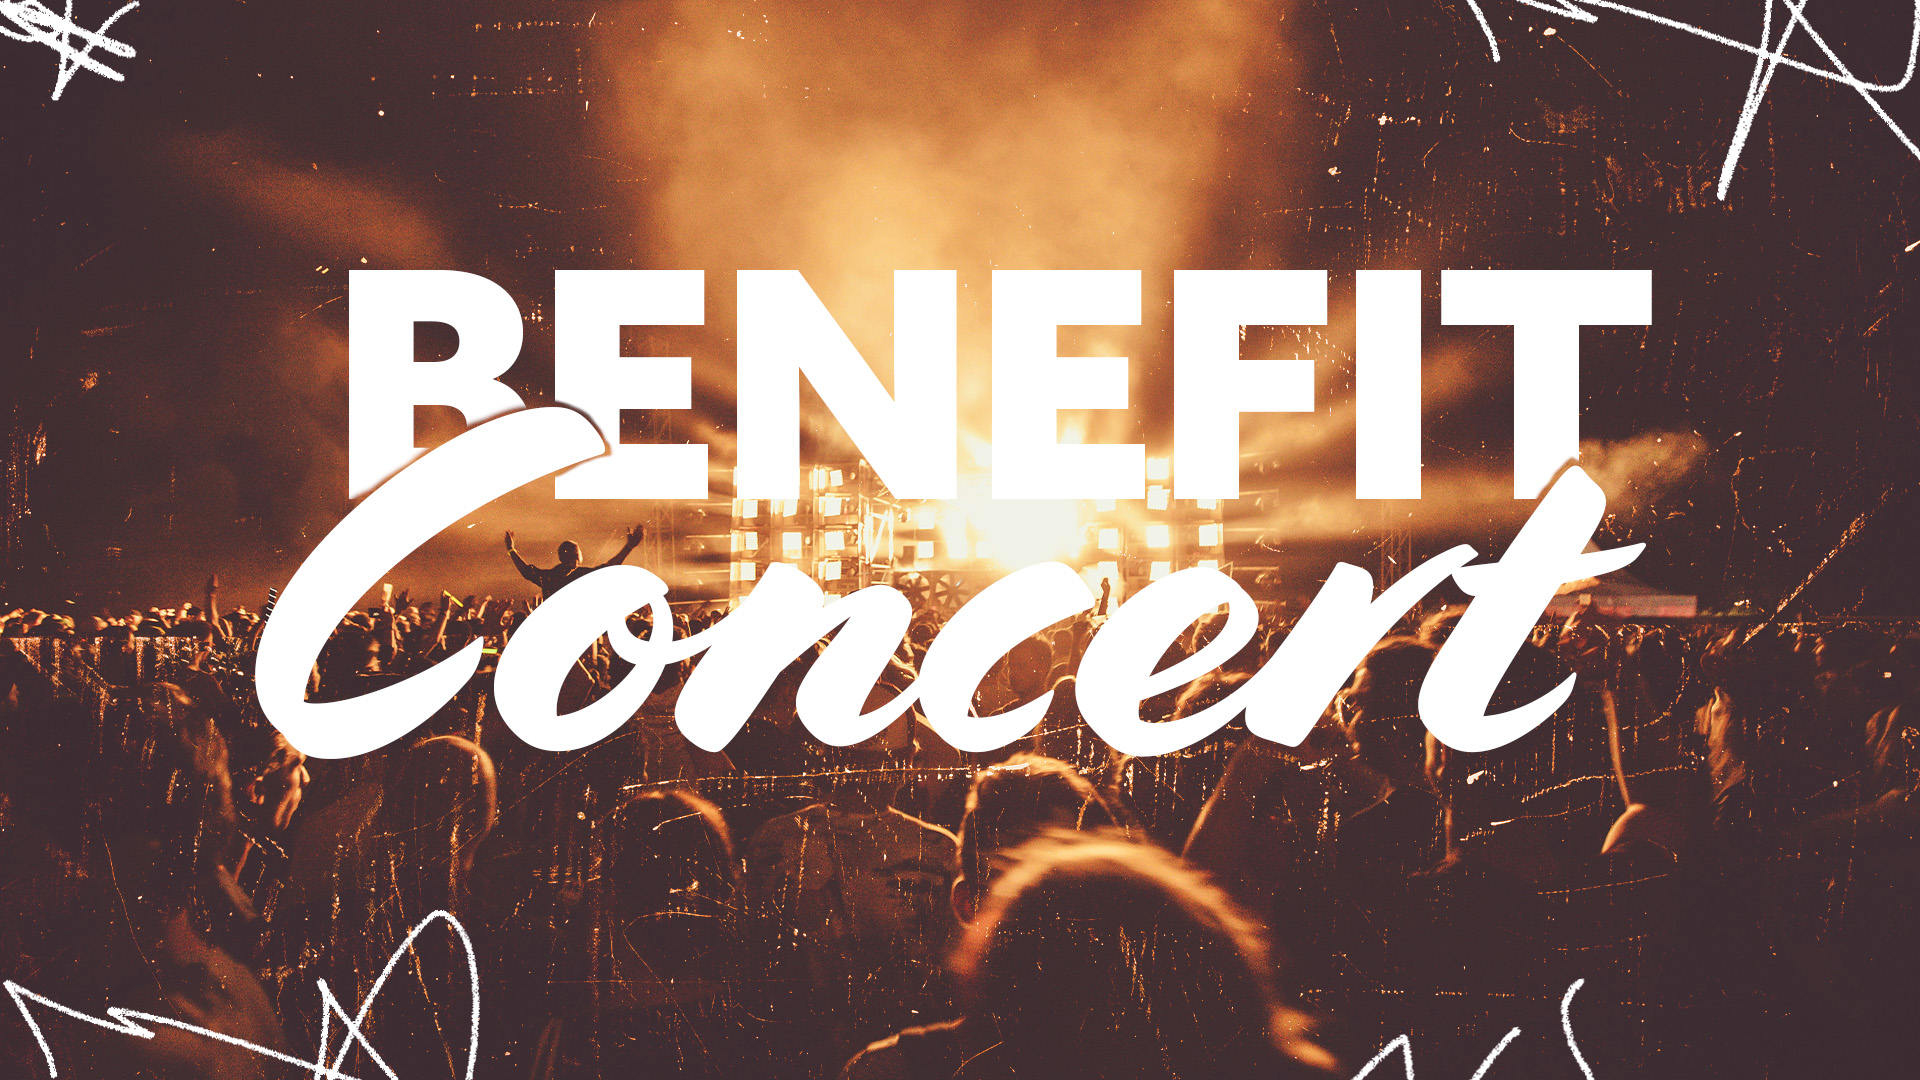 Image: Benefit Concert